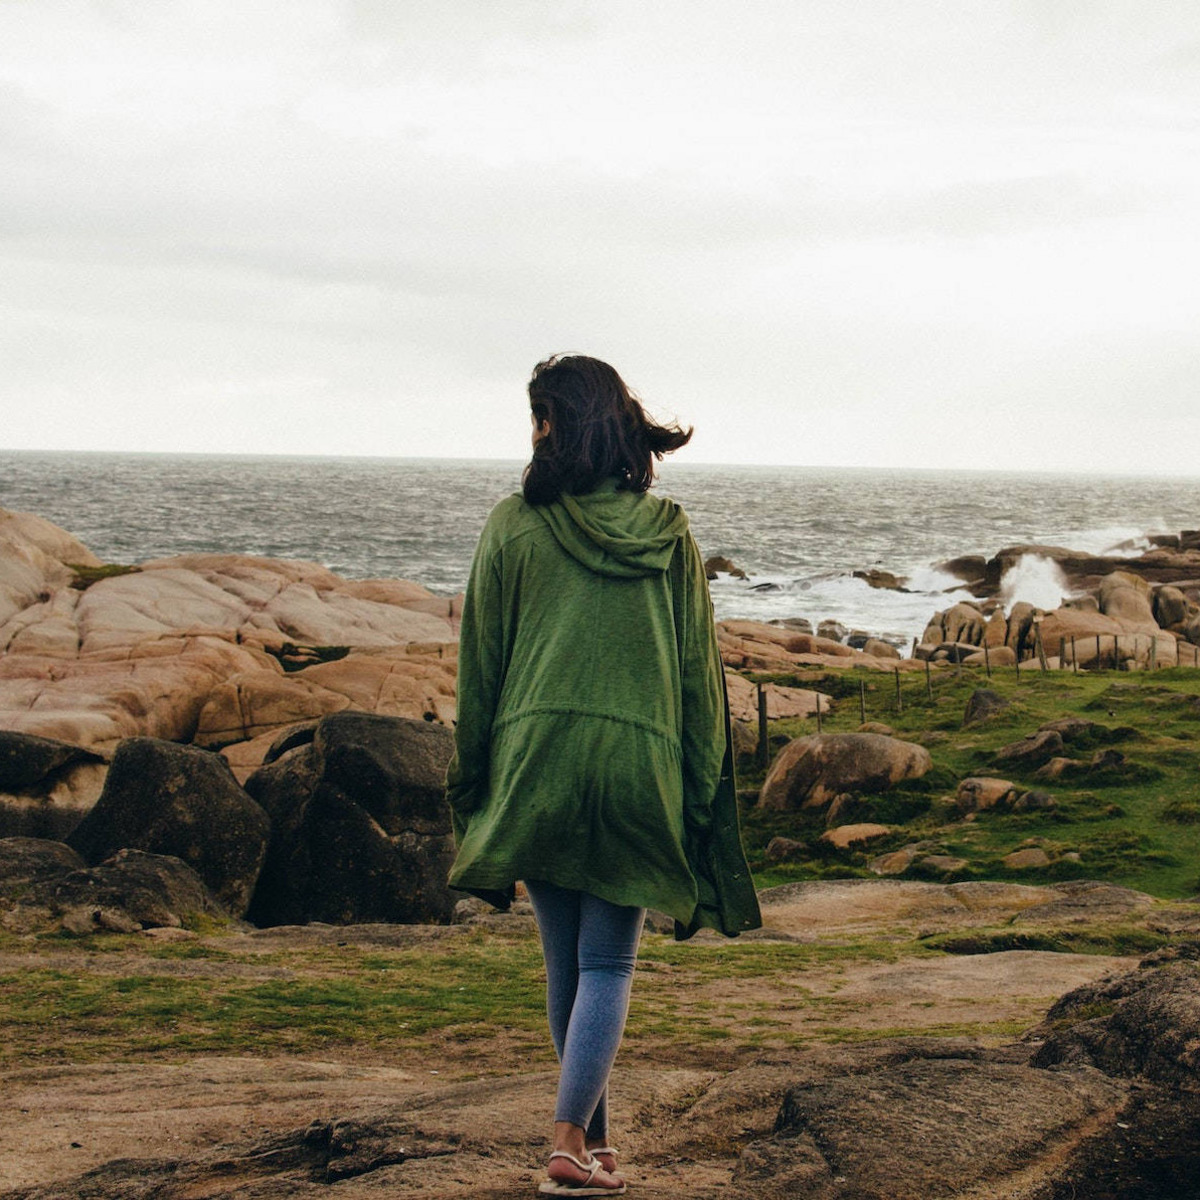 Eine Person in einem grünen Mantel läuft, uns den Rücken zugekehrt, den felsigen Strand von Cabo Polonio in Uruguay entlang, auf den tosende Wellen treffen.